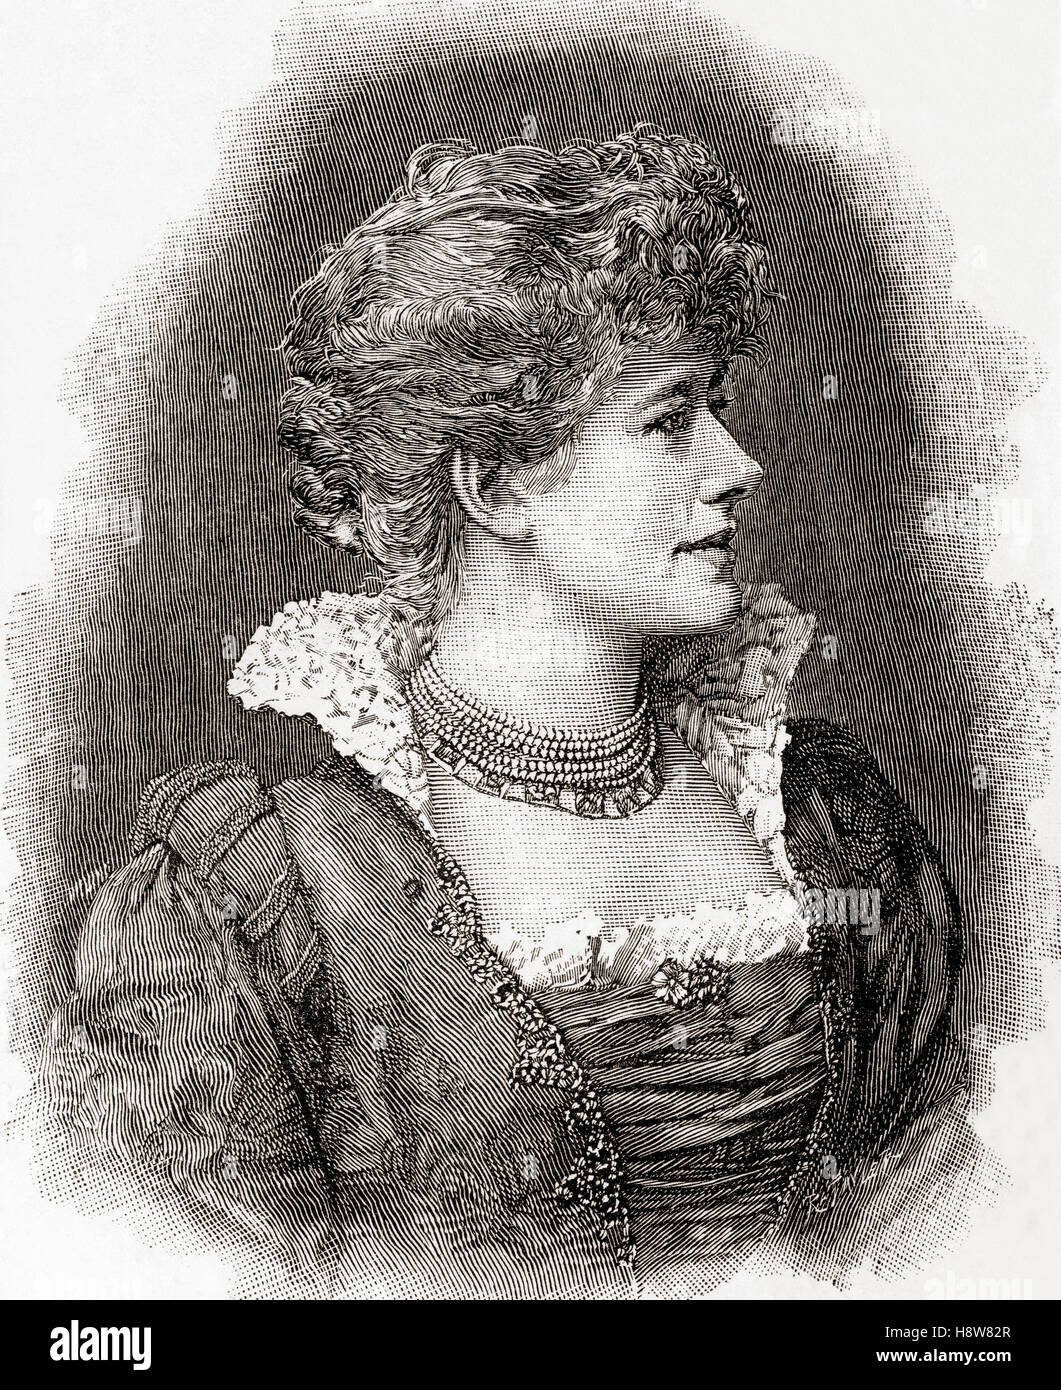 Dame Alice Ellen Terry, 1847-1928, beruflich als Ellen Terry bekannt.  Englische Bühnenschauspielerin, die Shakespeare Hauptdarstellerin in Großbritannien wurde. Stockfoto